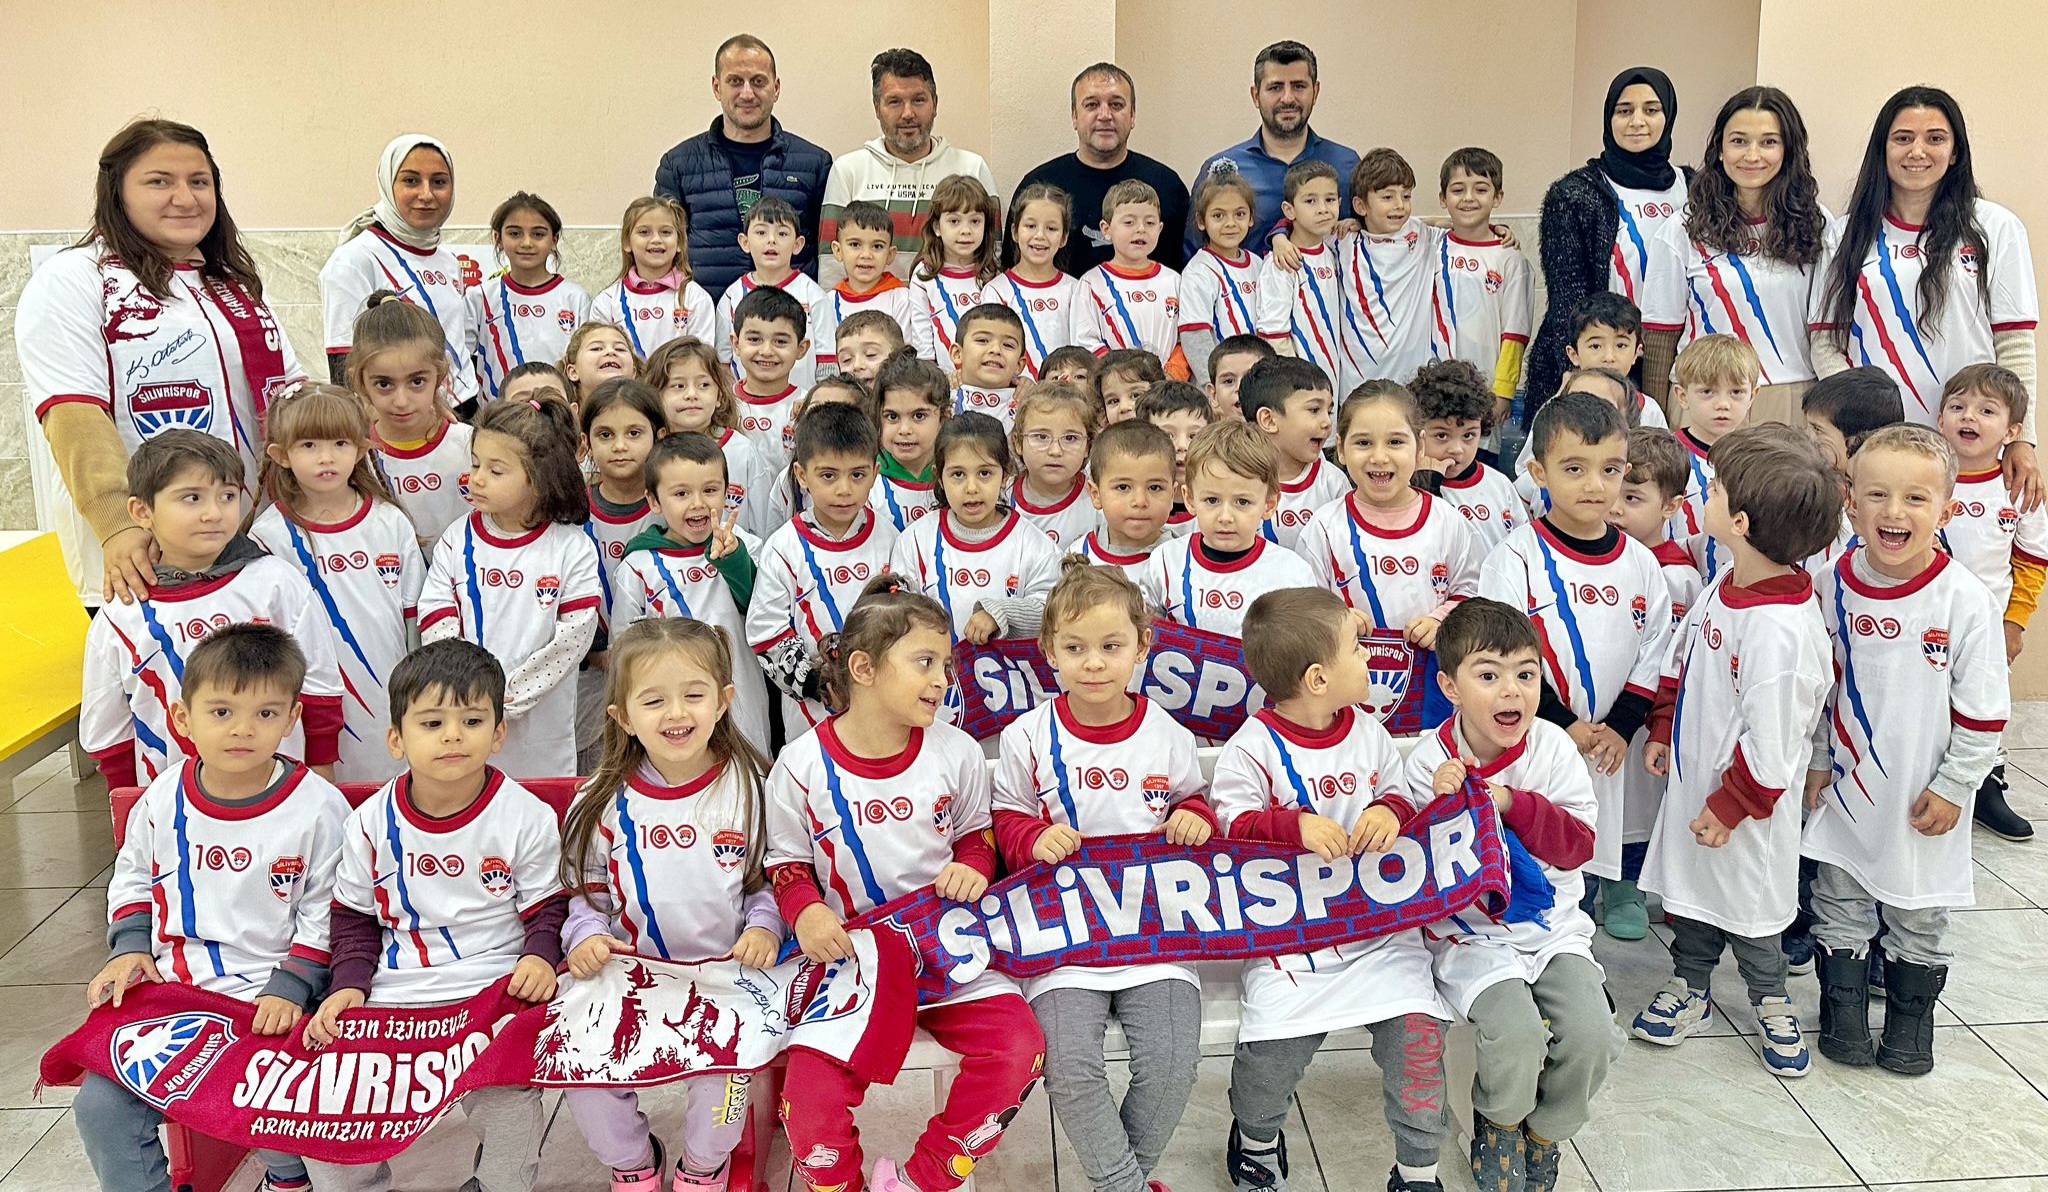 Maşalacı'nın Minik Öğrencilerinden Silivrispor'a Tam Destek